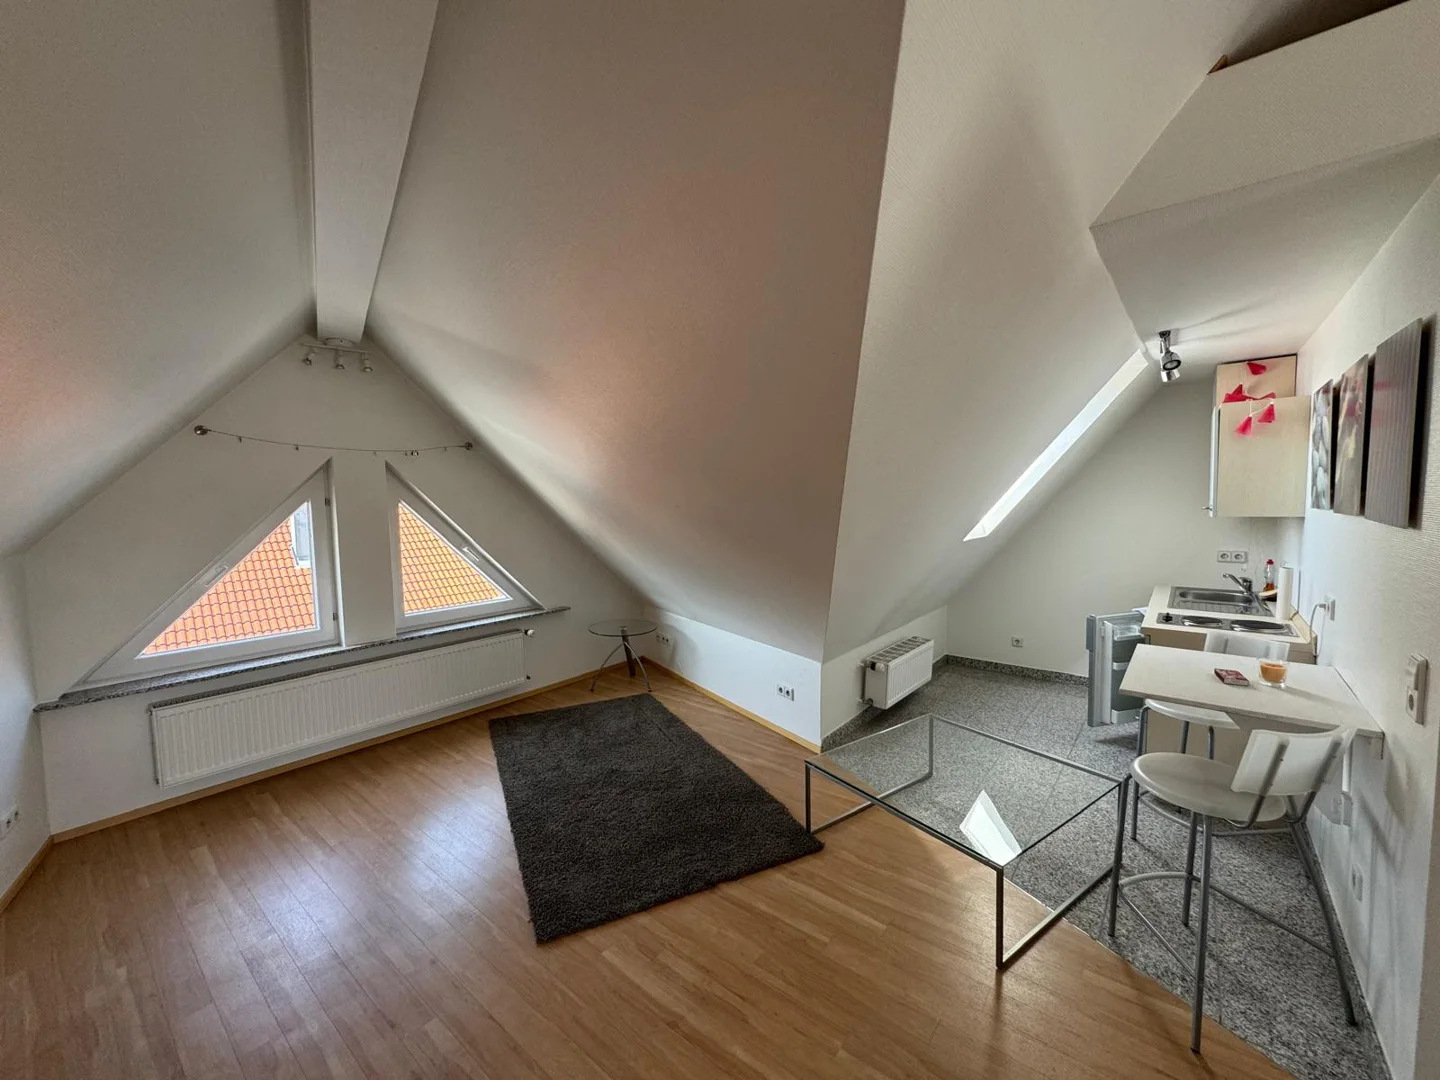 Leerstehend und sofort verfügbar - 1,5-Zi.-Apartment in attraktiver Lage in Söflingen